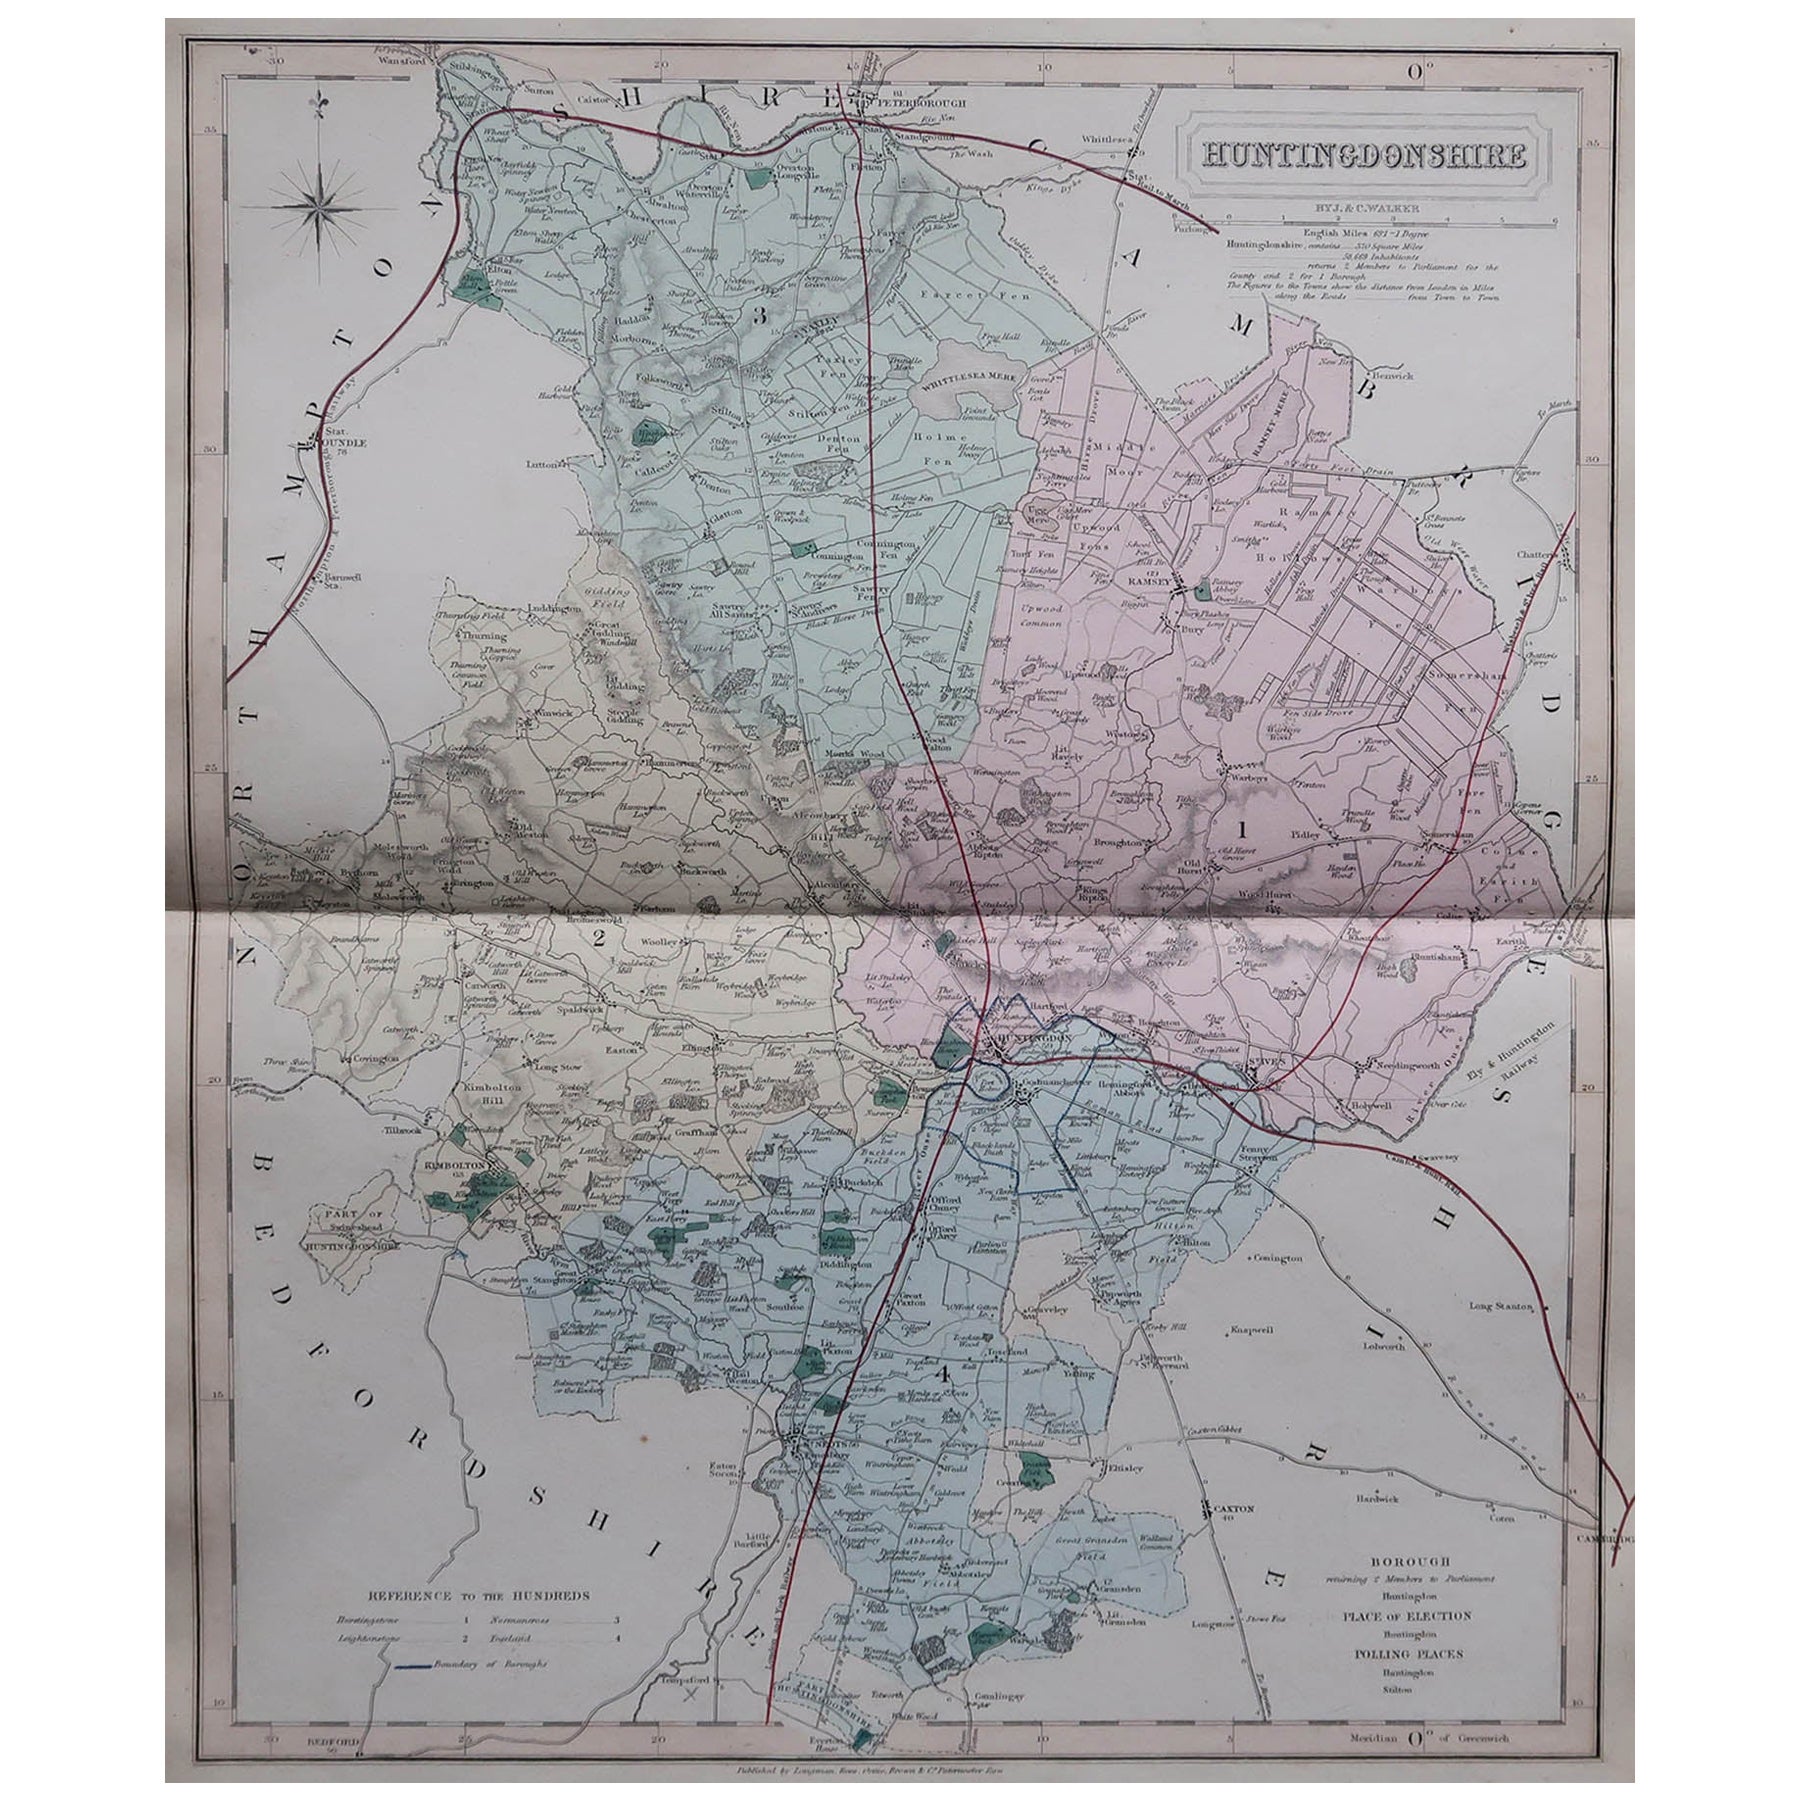 Carte originale et ancienne du comté d'Angleterre, Huntingdonshire, J & C Walker, 1851